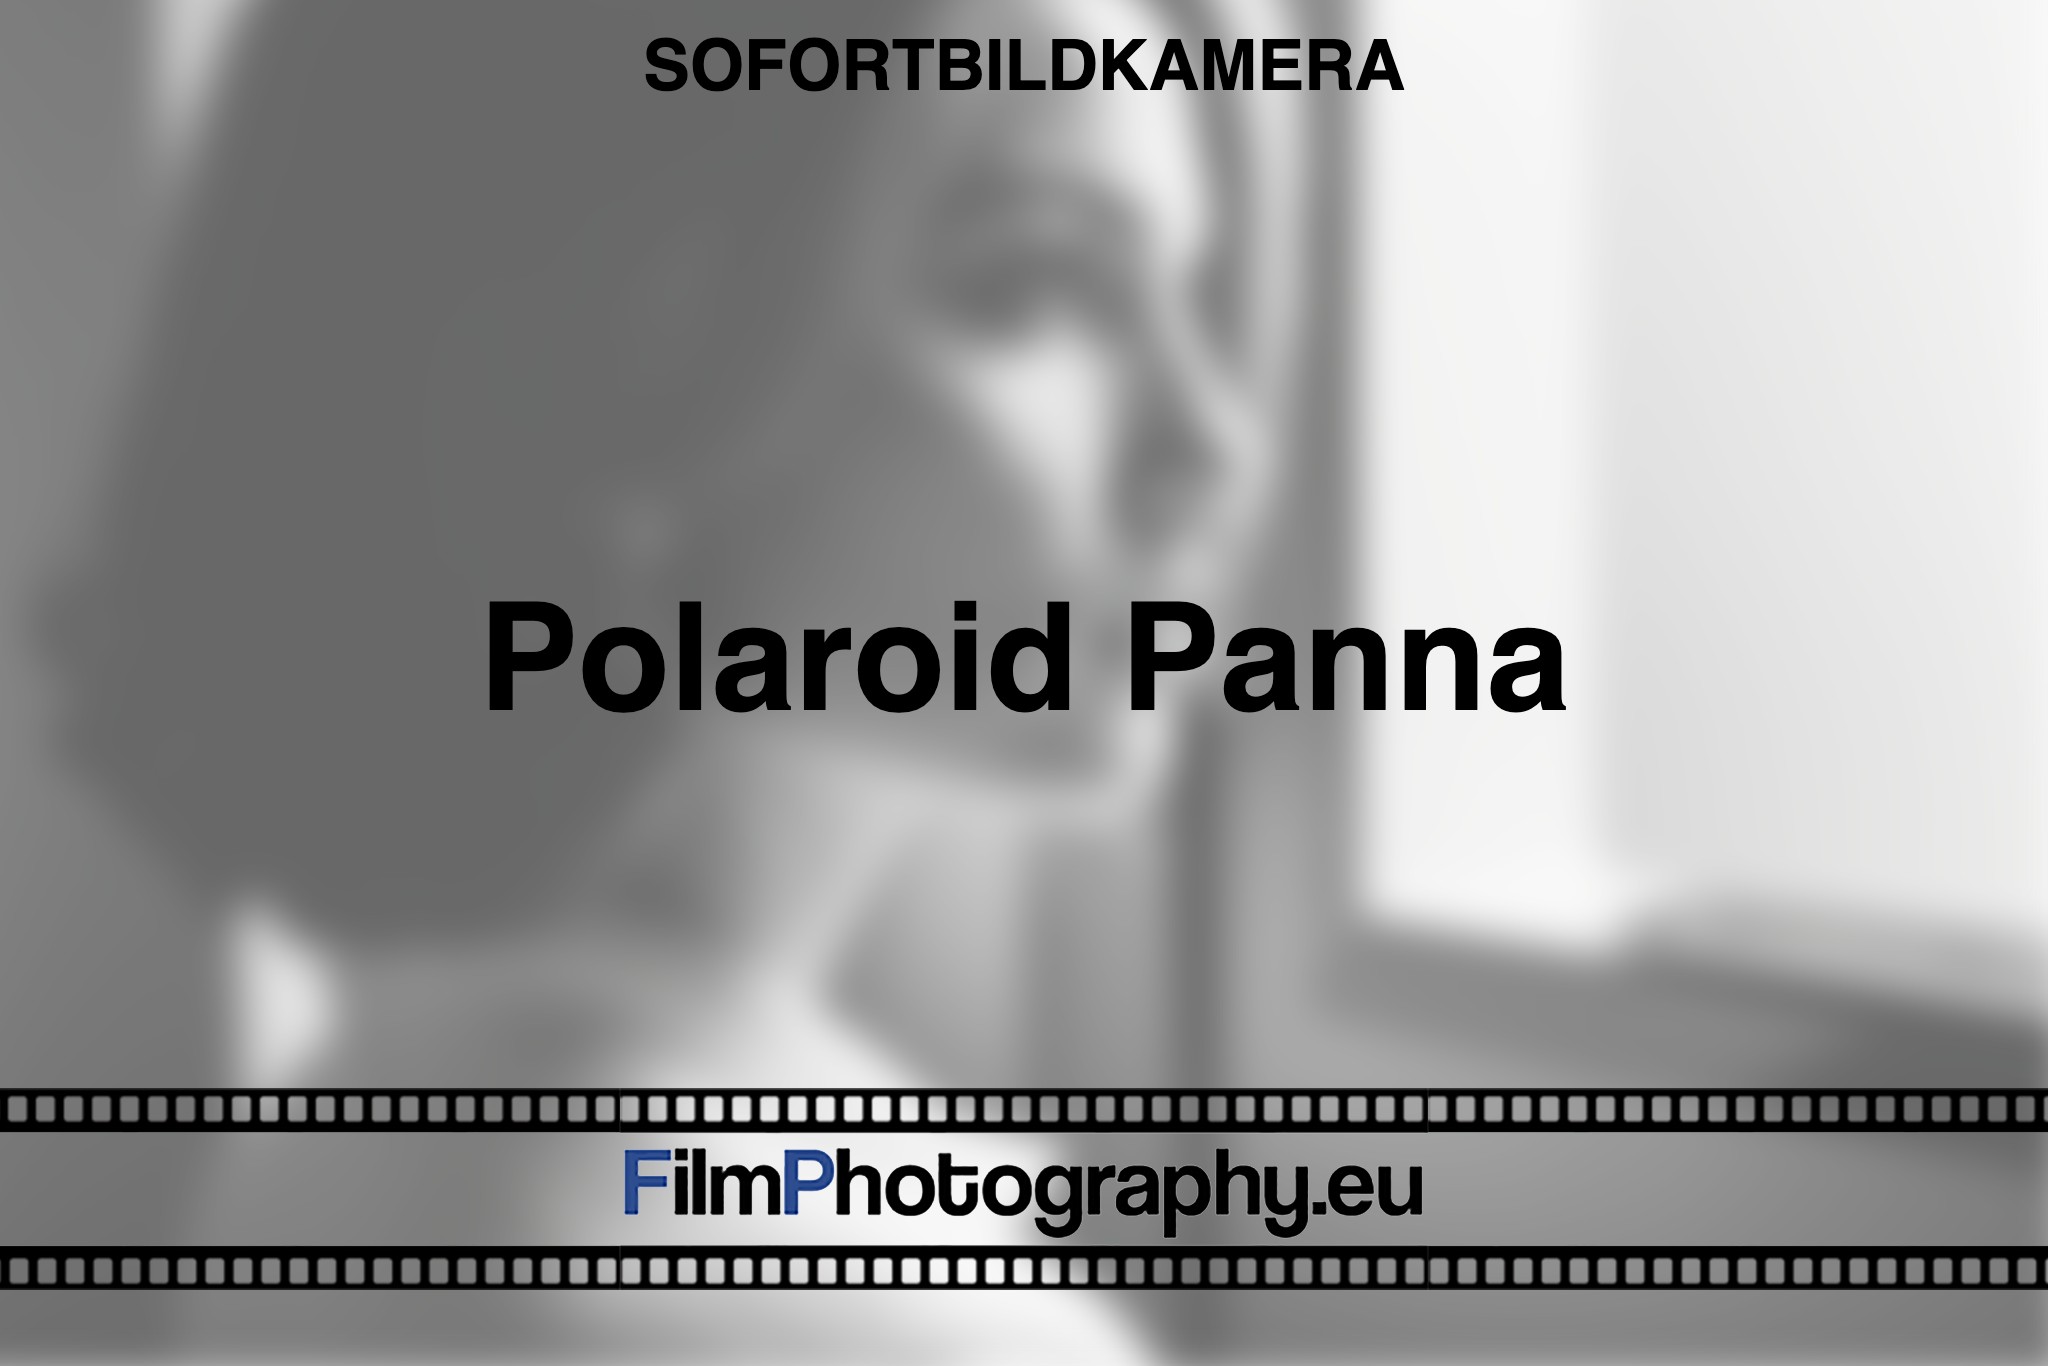 polaroid-panna-sofortbildkamera-bnv